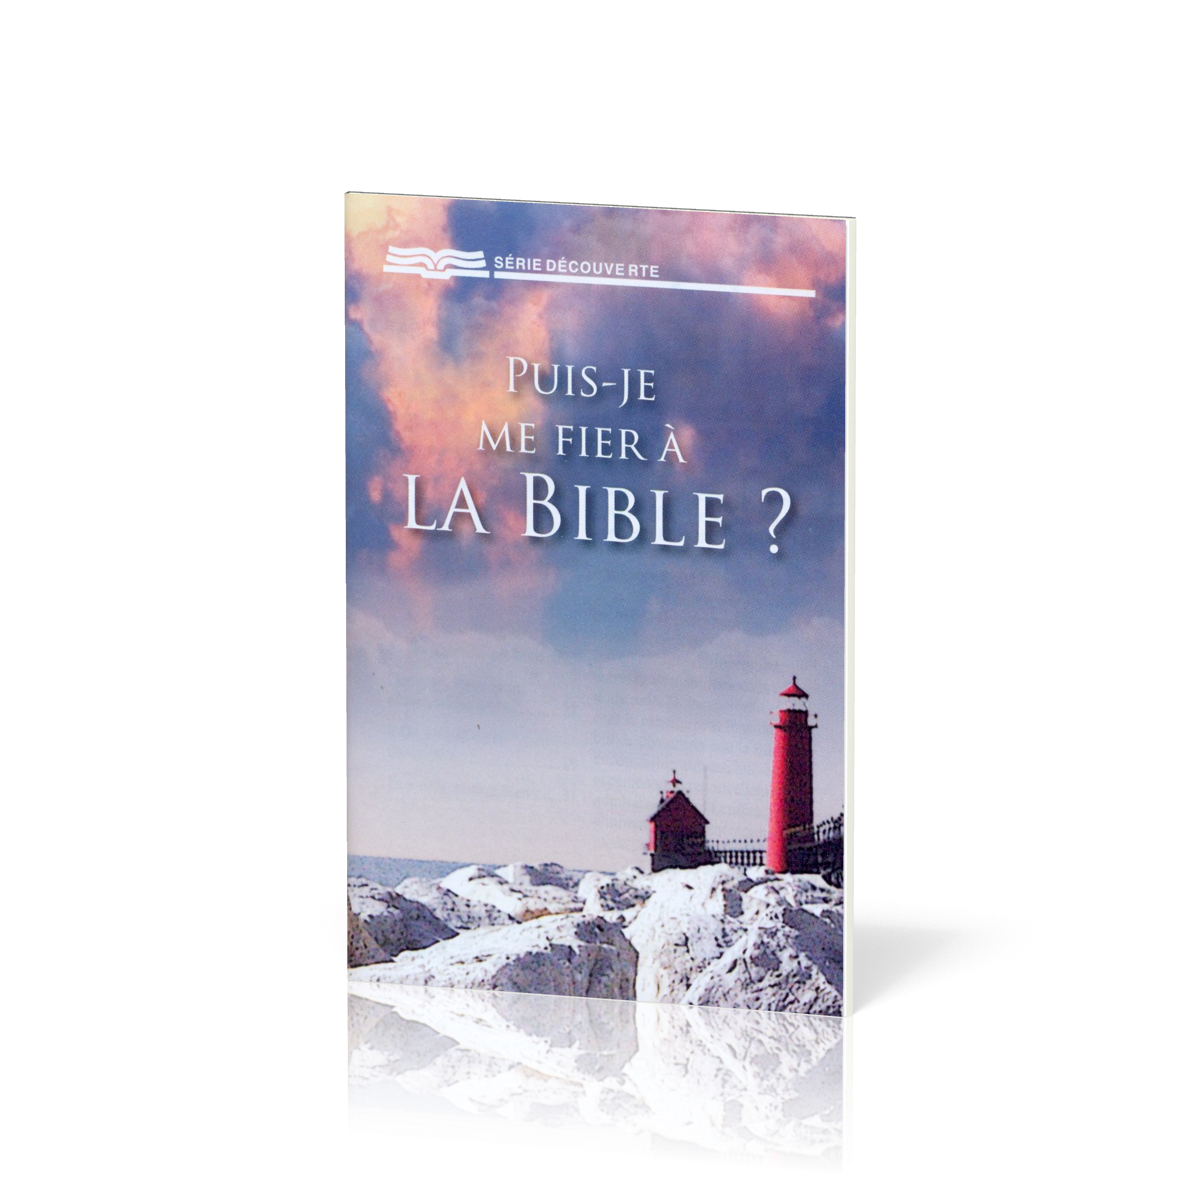 PUIS-JE ME FIER A LA BIBLE ?